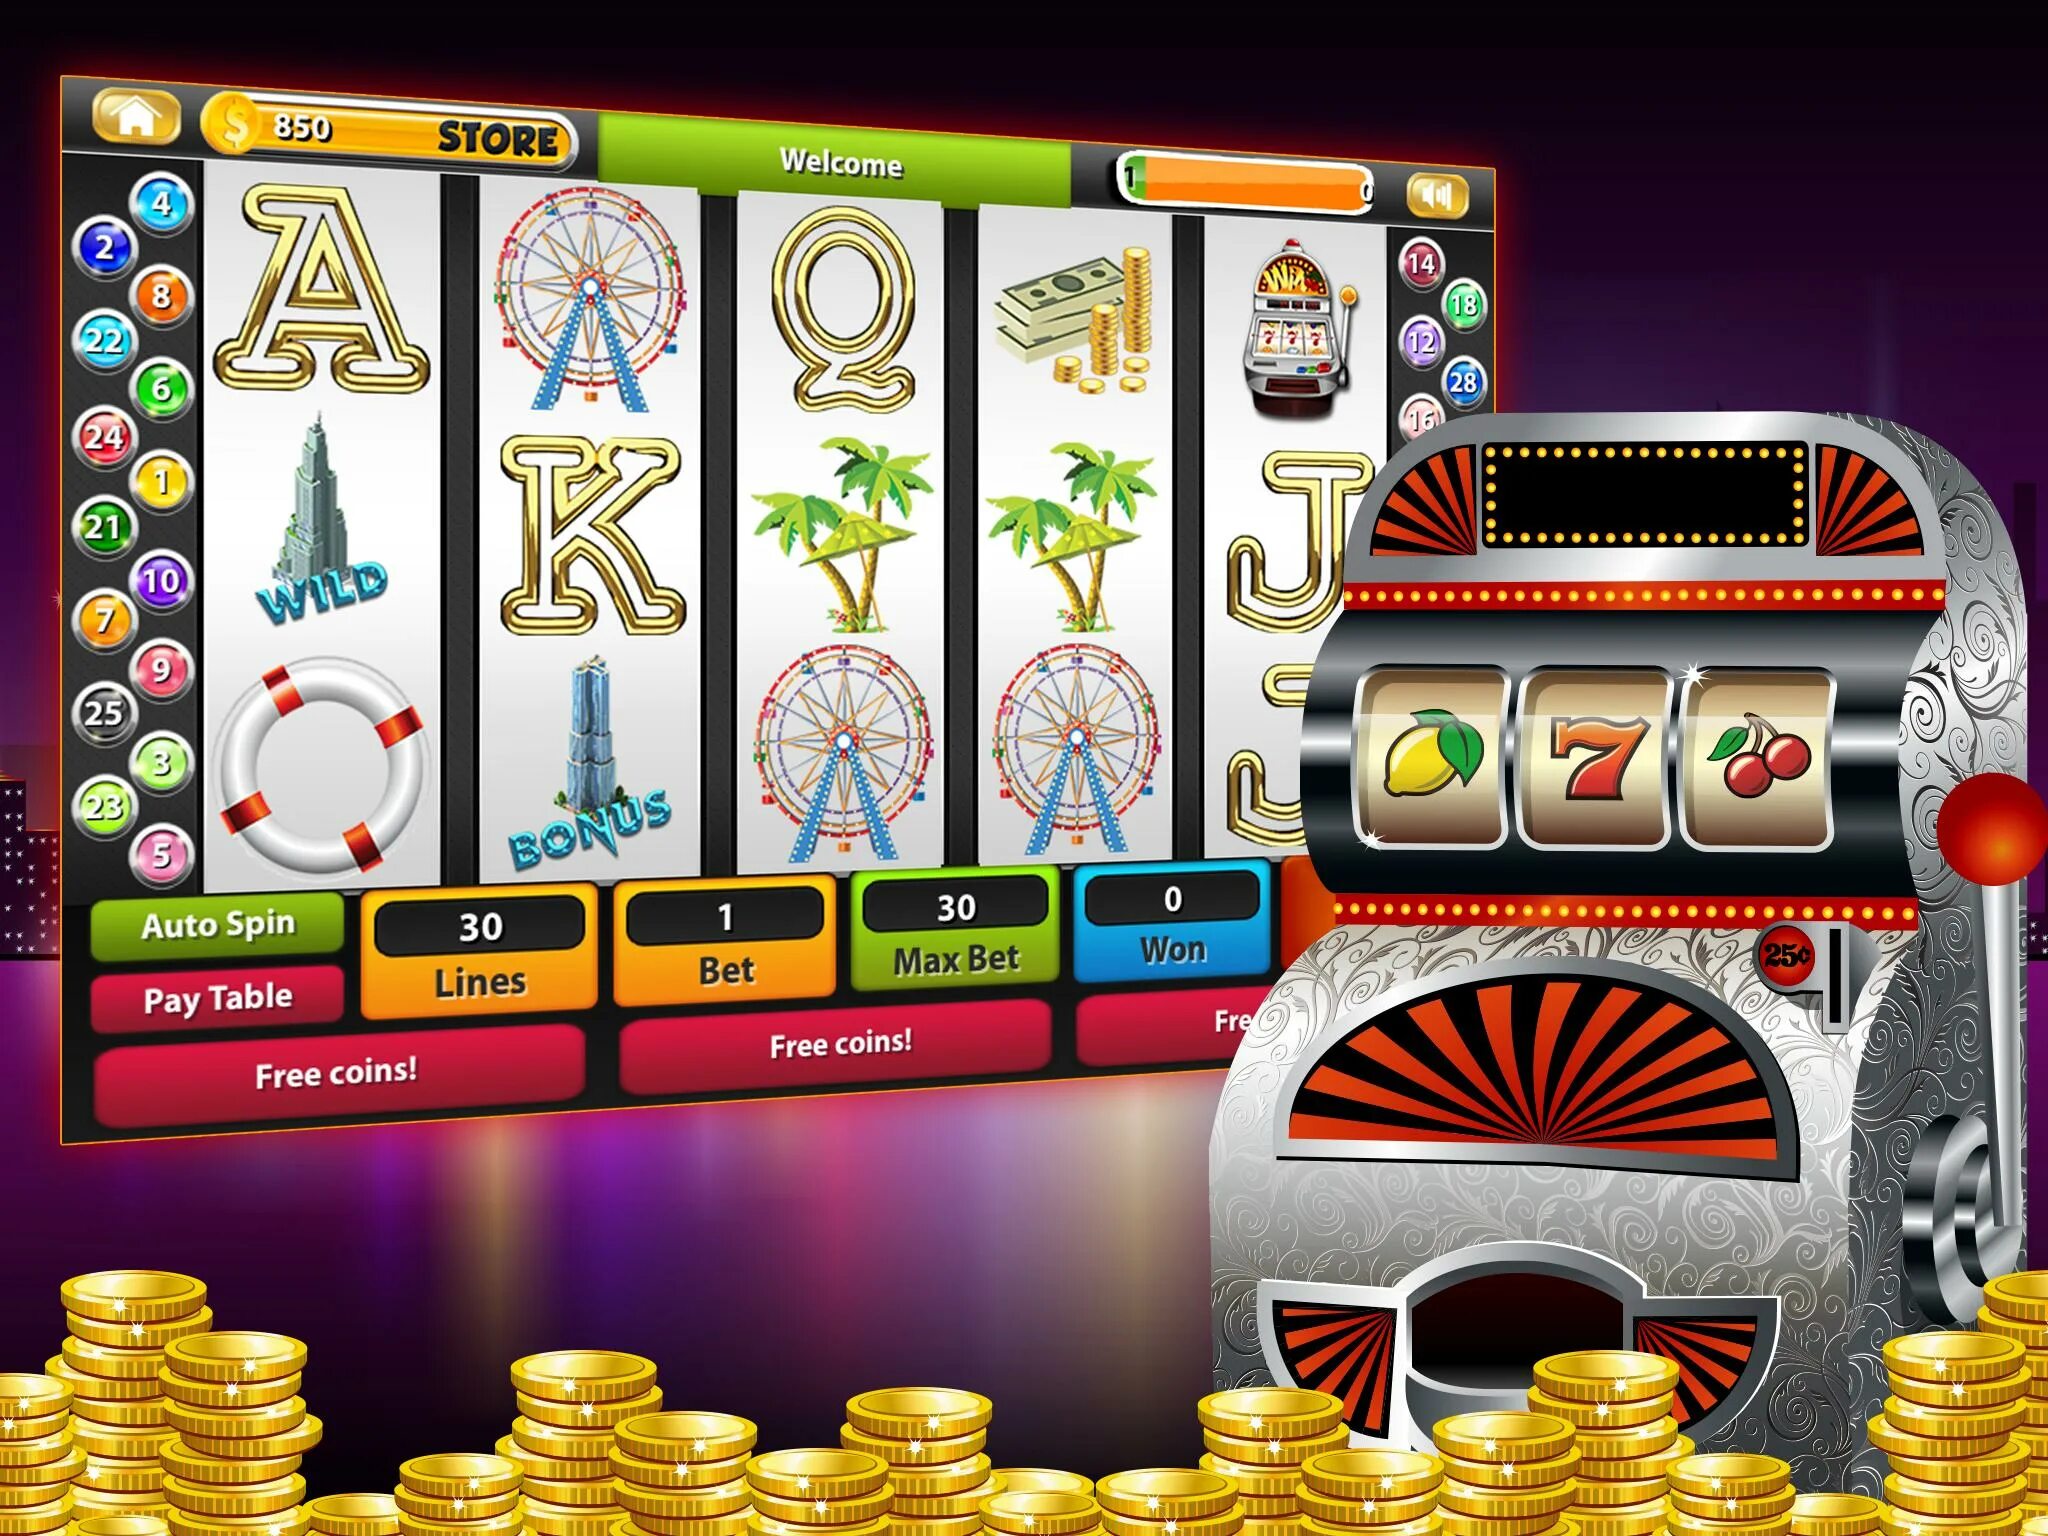 Игровой аппарат Джек пот. Игровой автомат казино. Игровые автоматы на реальные деньги. Игральные автоматы с деньгами.